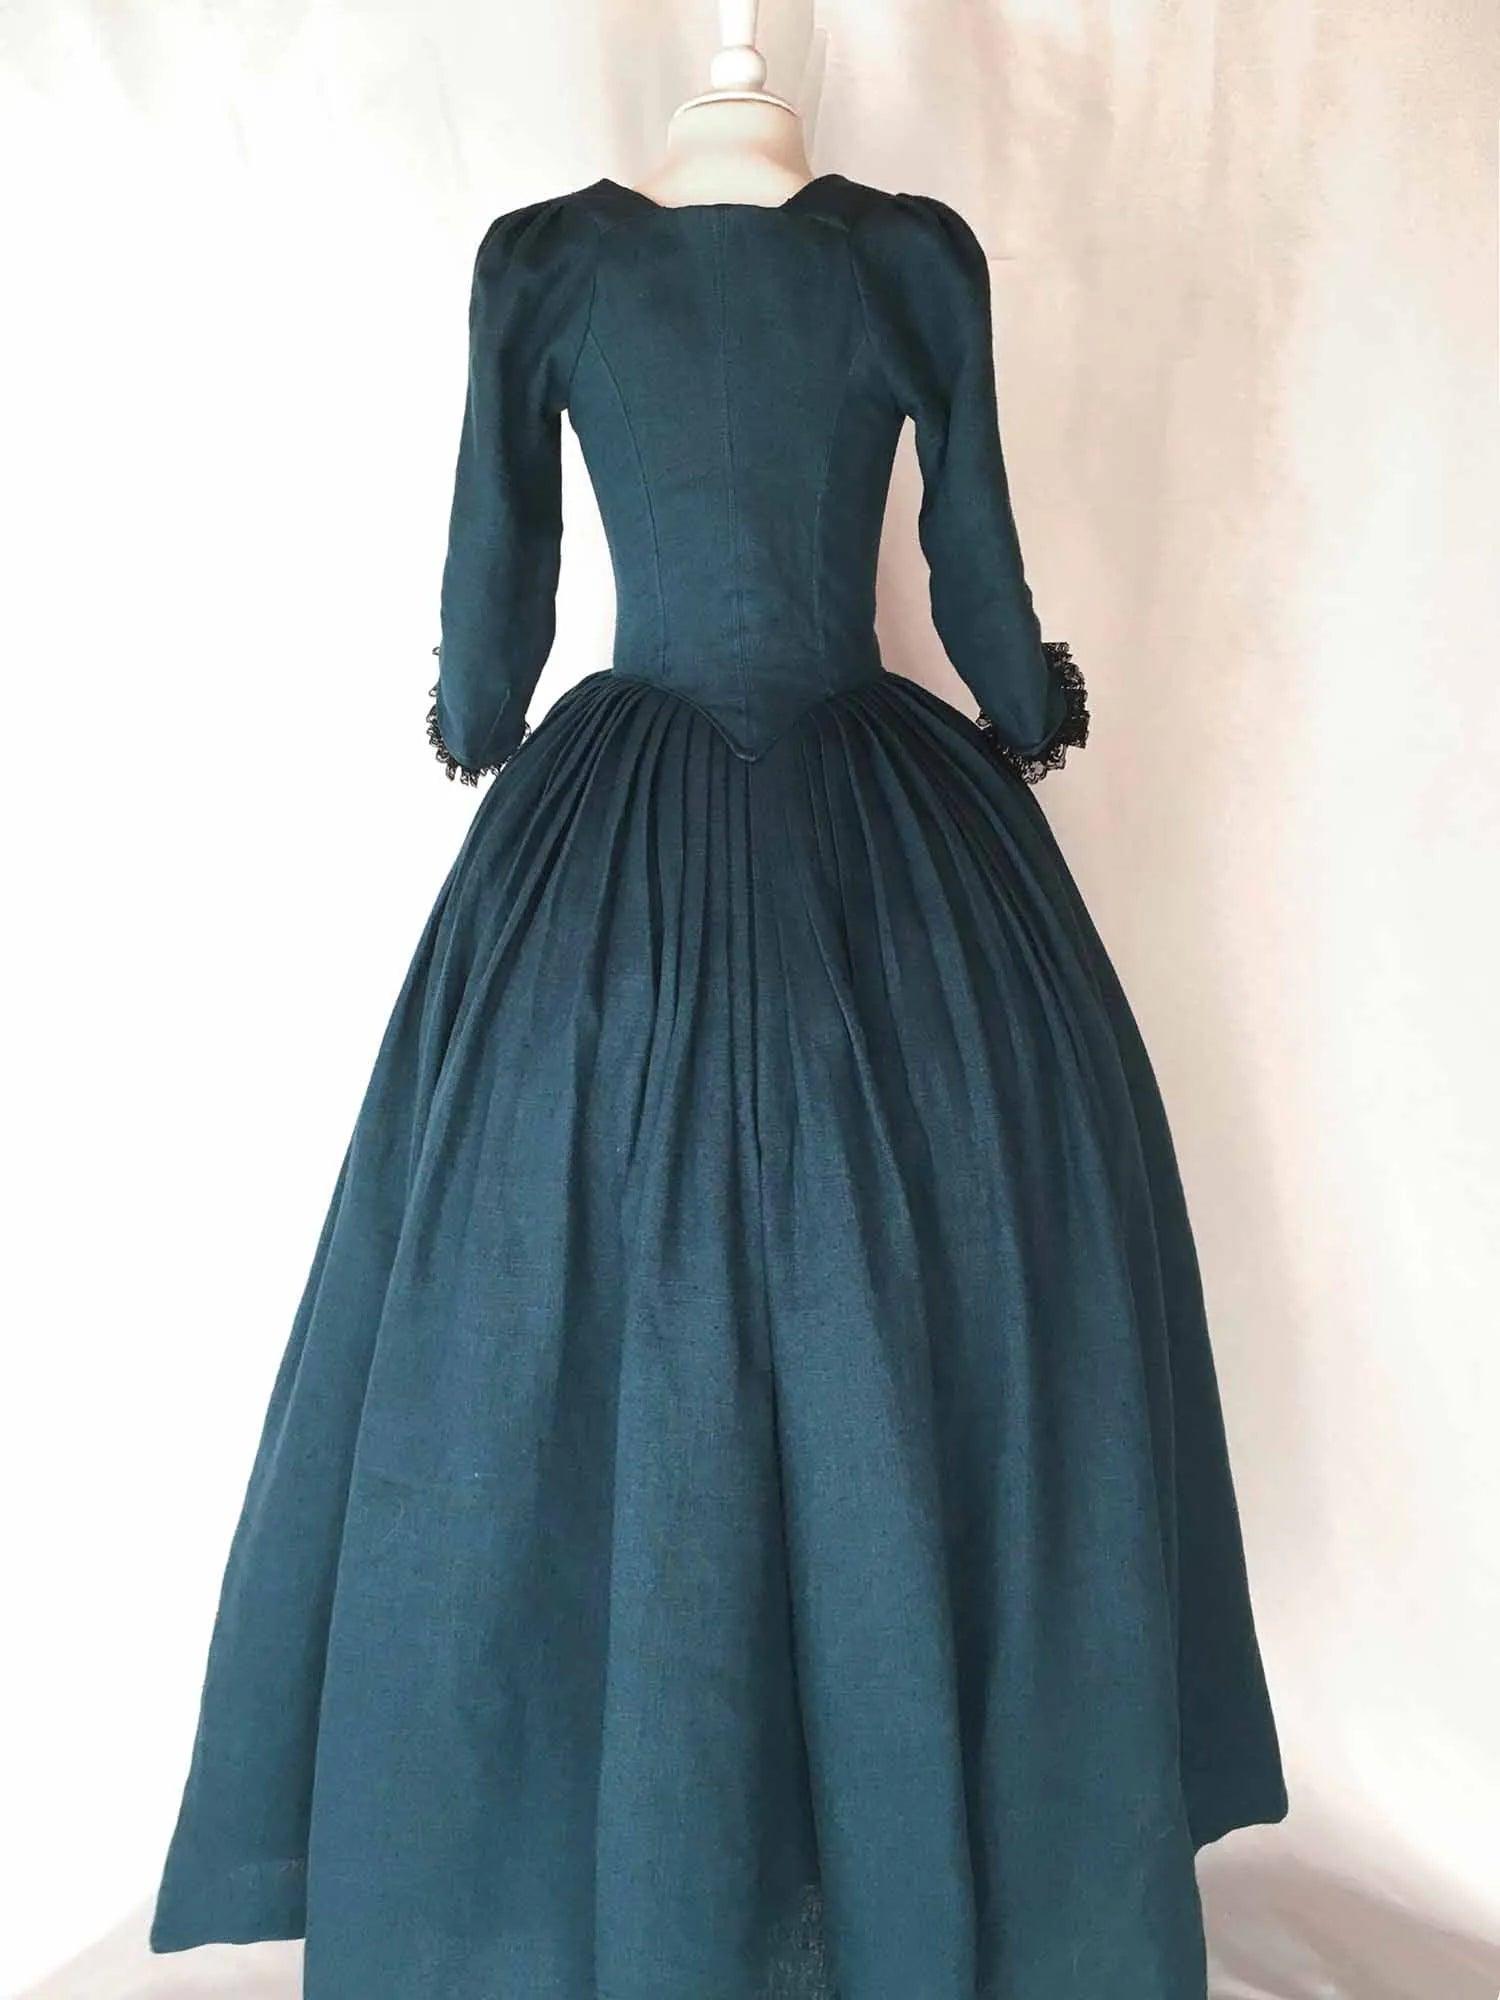 LOUISE, 18th-Century Dress In Ocean Blue Linen - Atelier Serraspina